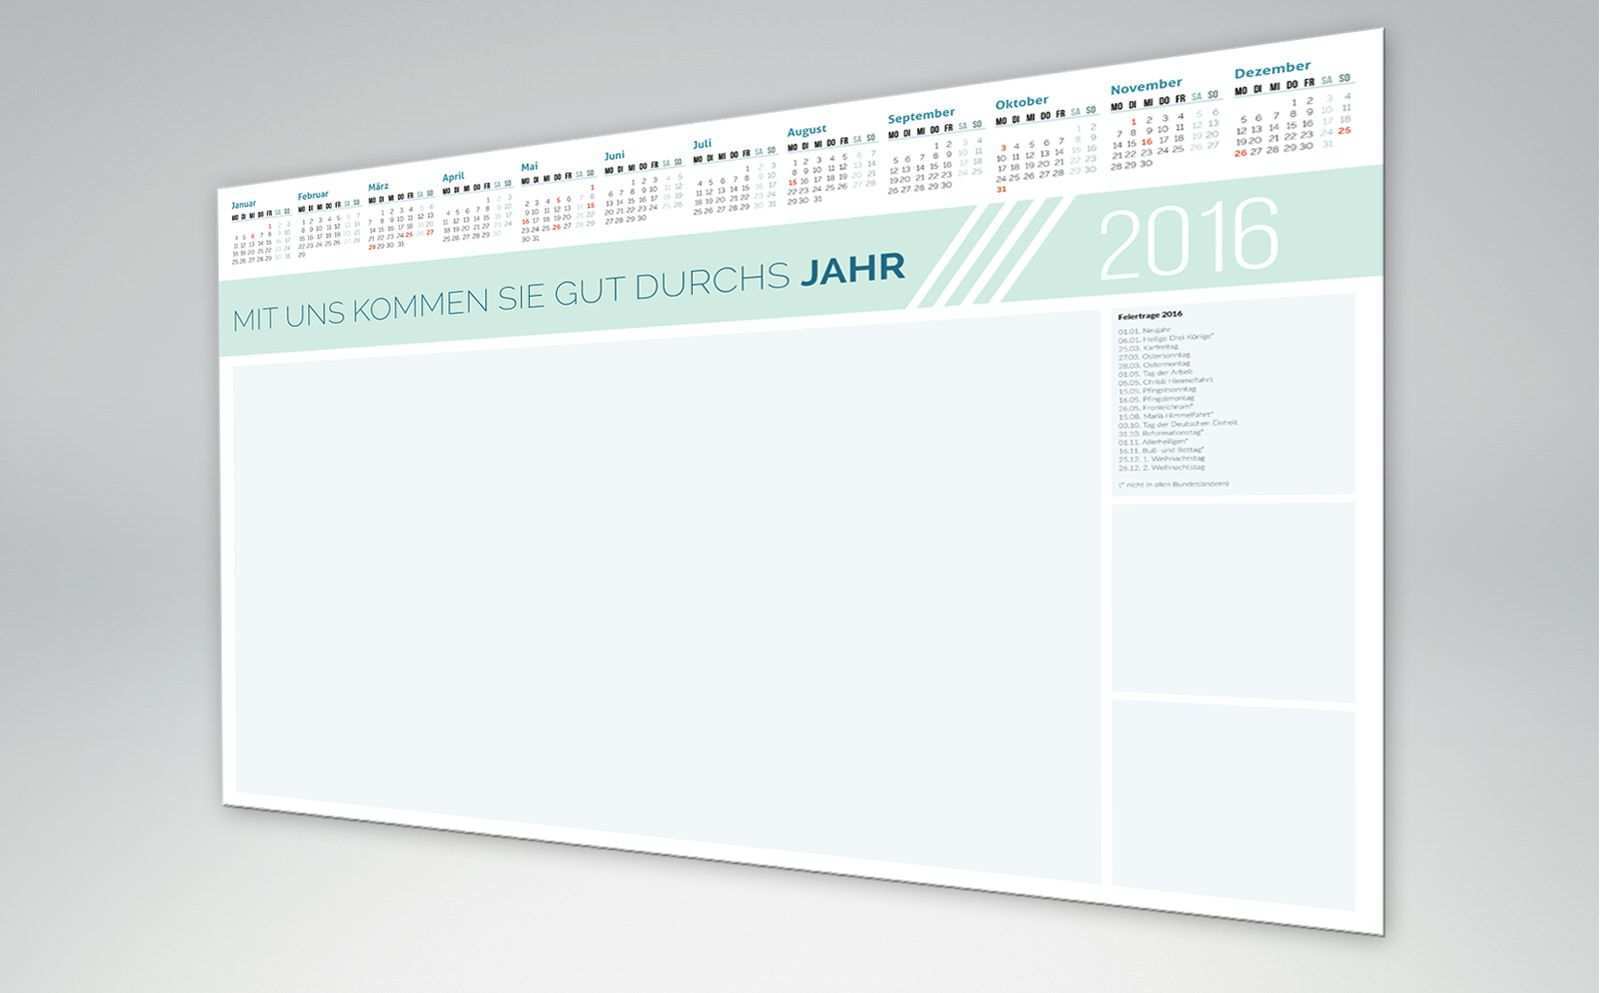 Indesign Kalendervorlagen 2018 2019 2020 Kalender Vorlagen Vorlagen Kalender